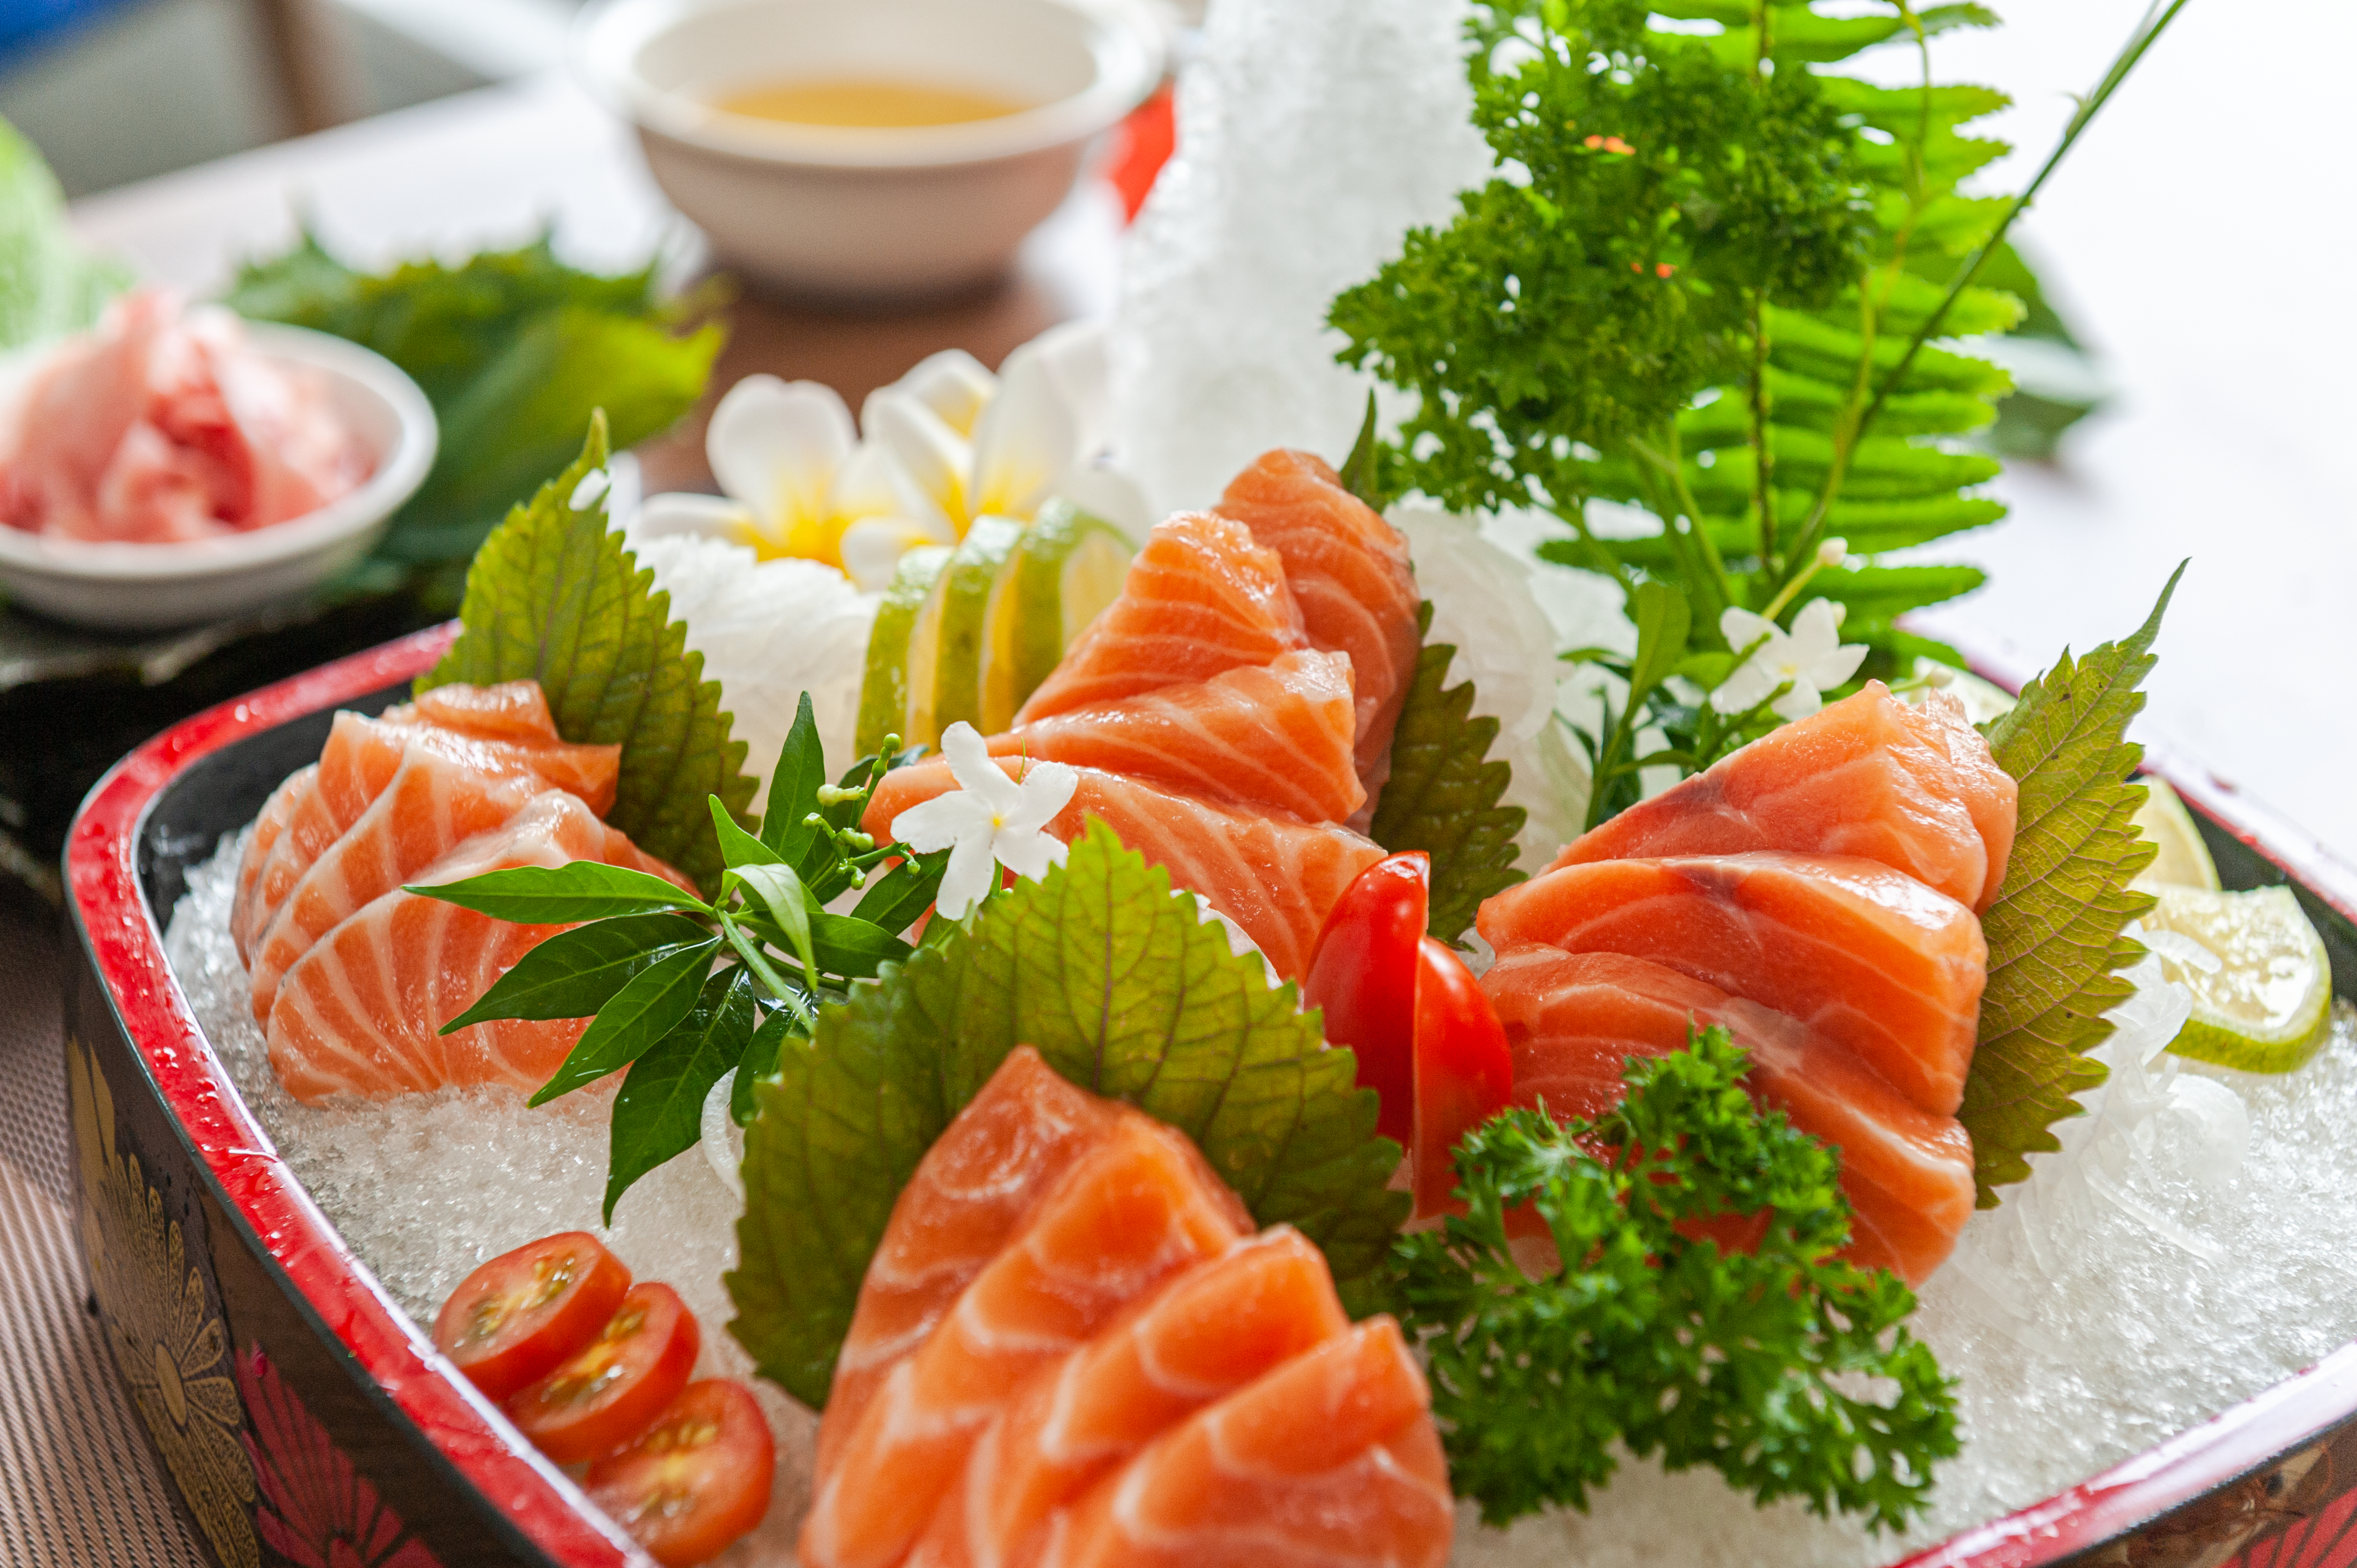 Nhà hàng Xrestaurant có đa dạng các món châu Á như: sushi, cá tầm, cá lăng...